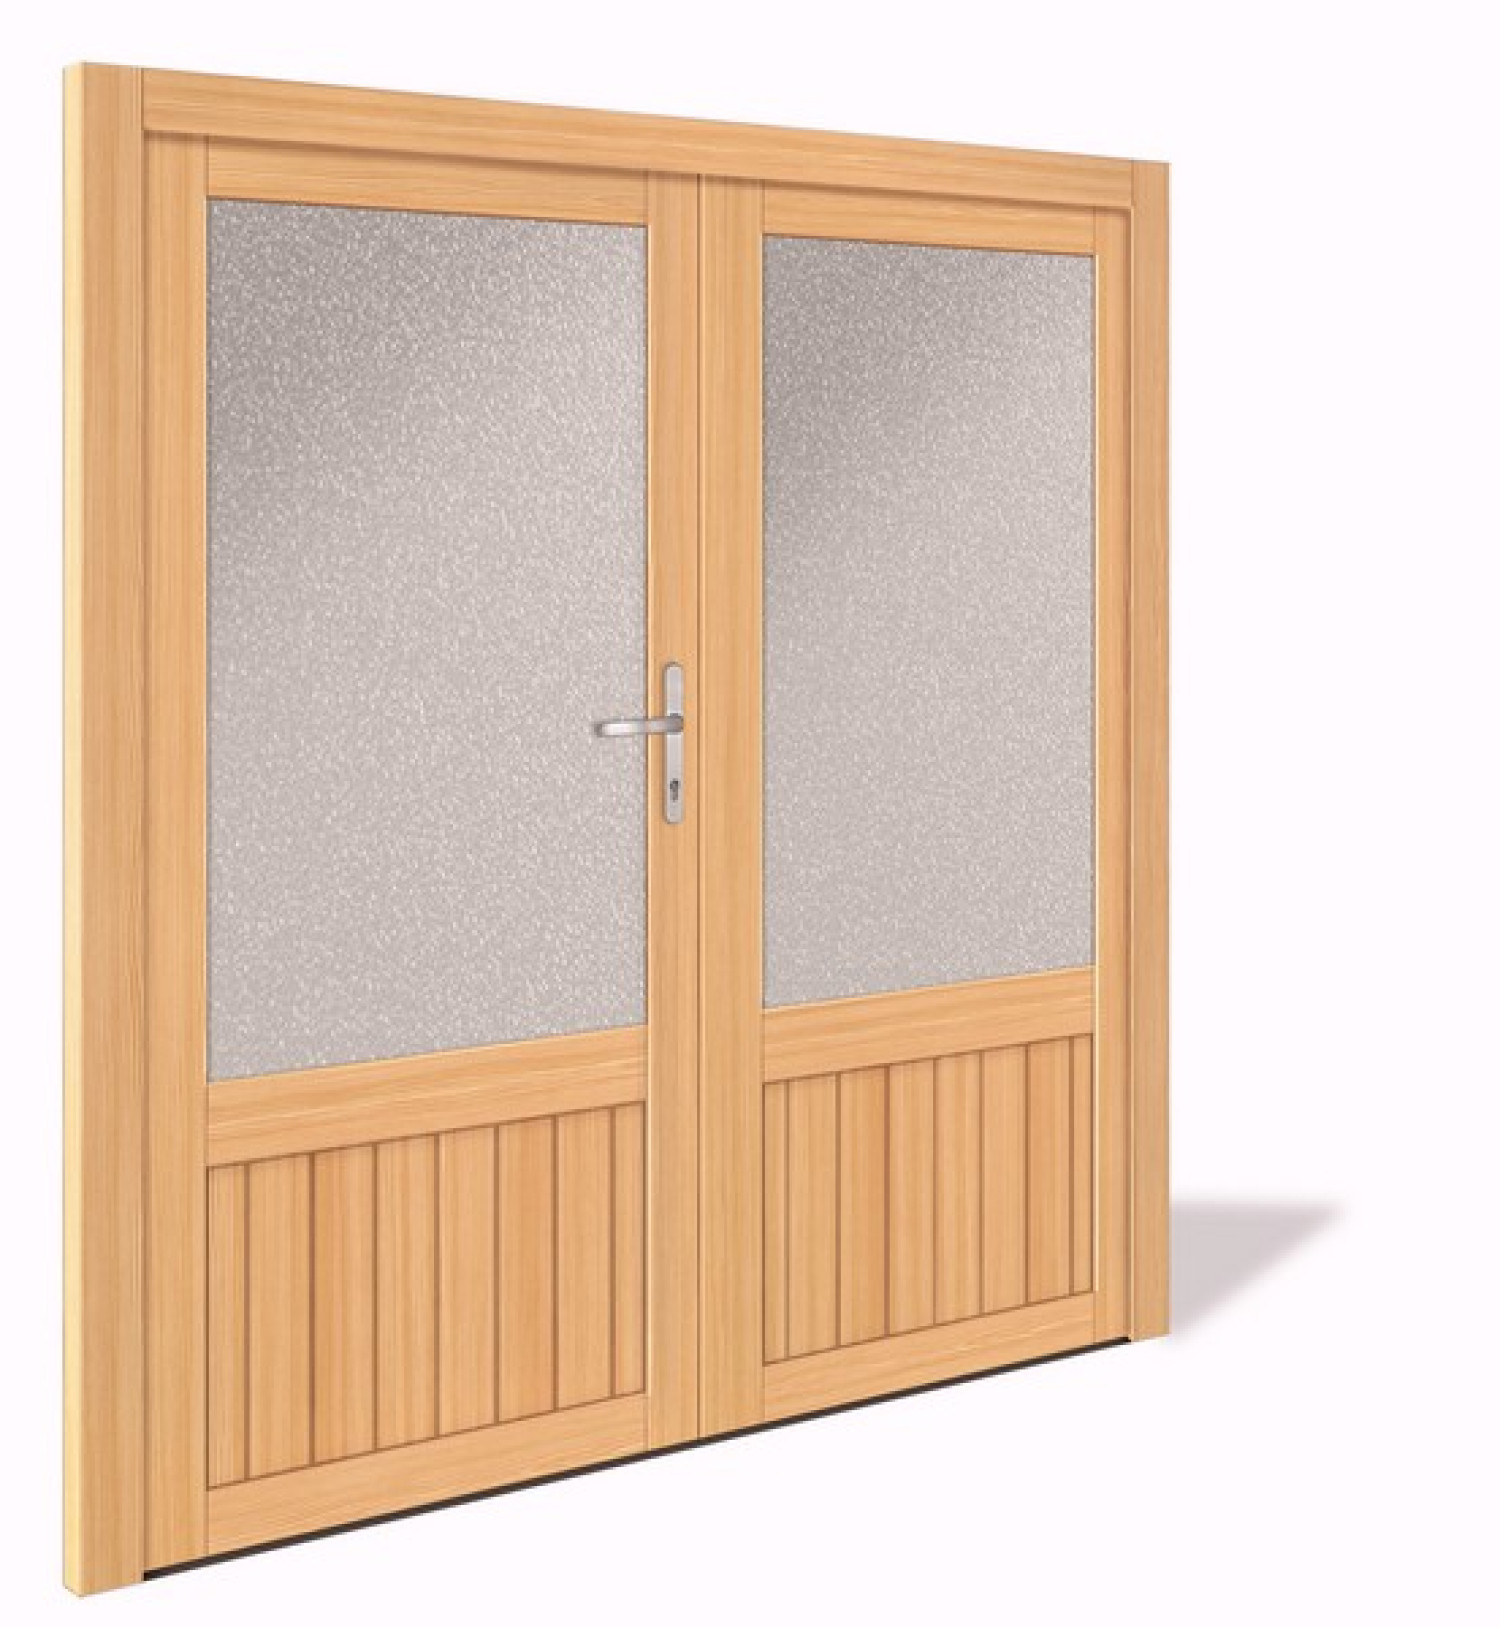 NET 1068-2 Holz Doppelflügel Nebeneingangstür mit Glasausschnitt - Interio